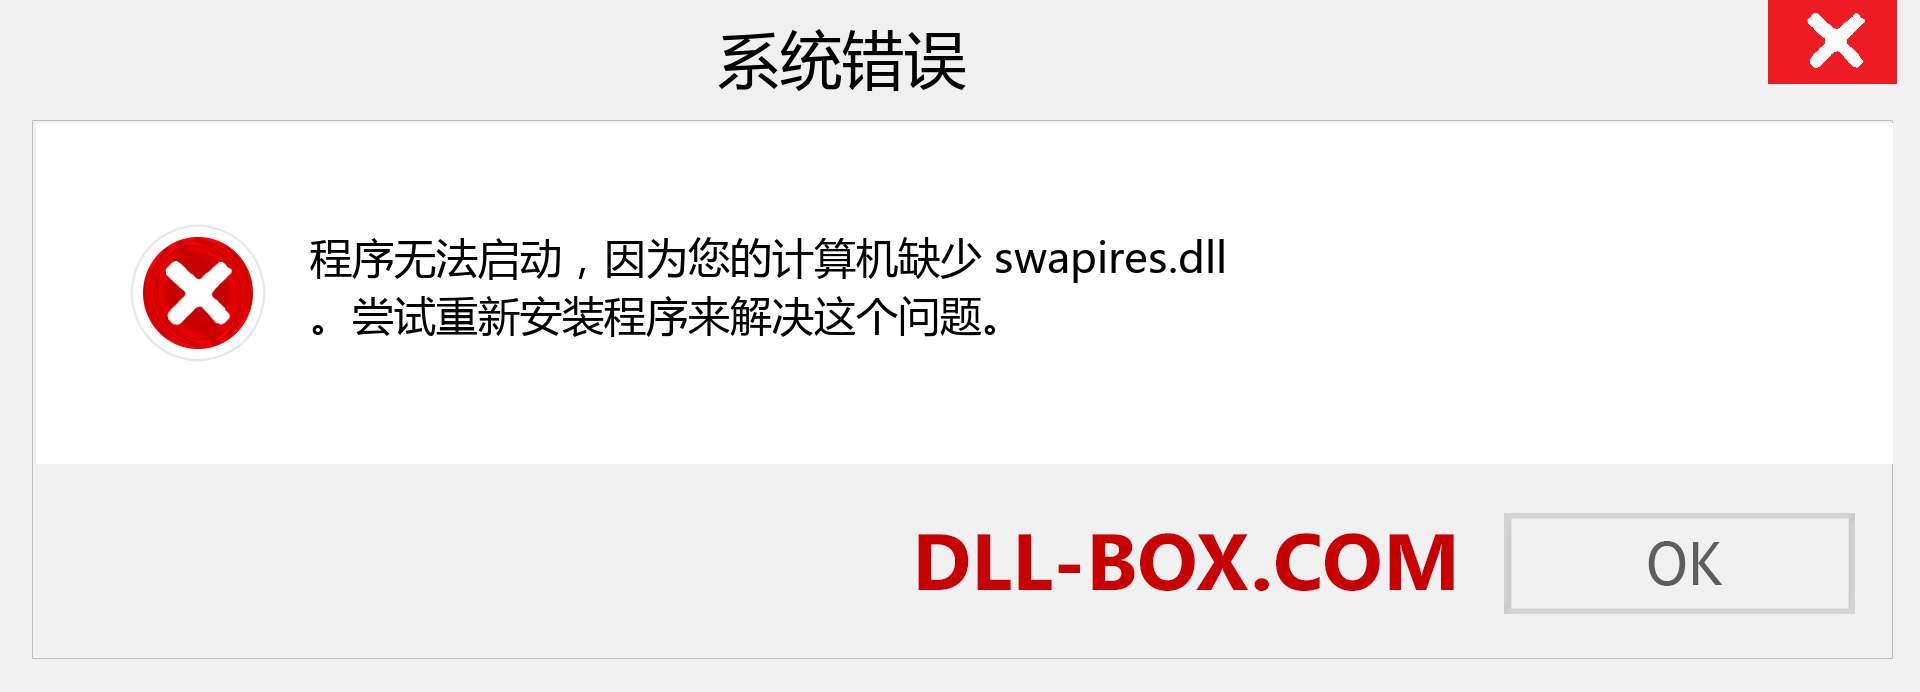 swapires.dll 文件丢失？。 适用于 Windows 7、8、10 的下载 - 修复 Windows、照片、图像上的 swapires dll 丢失错误